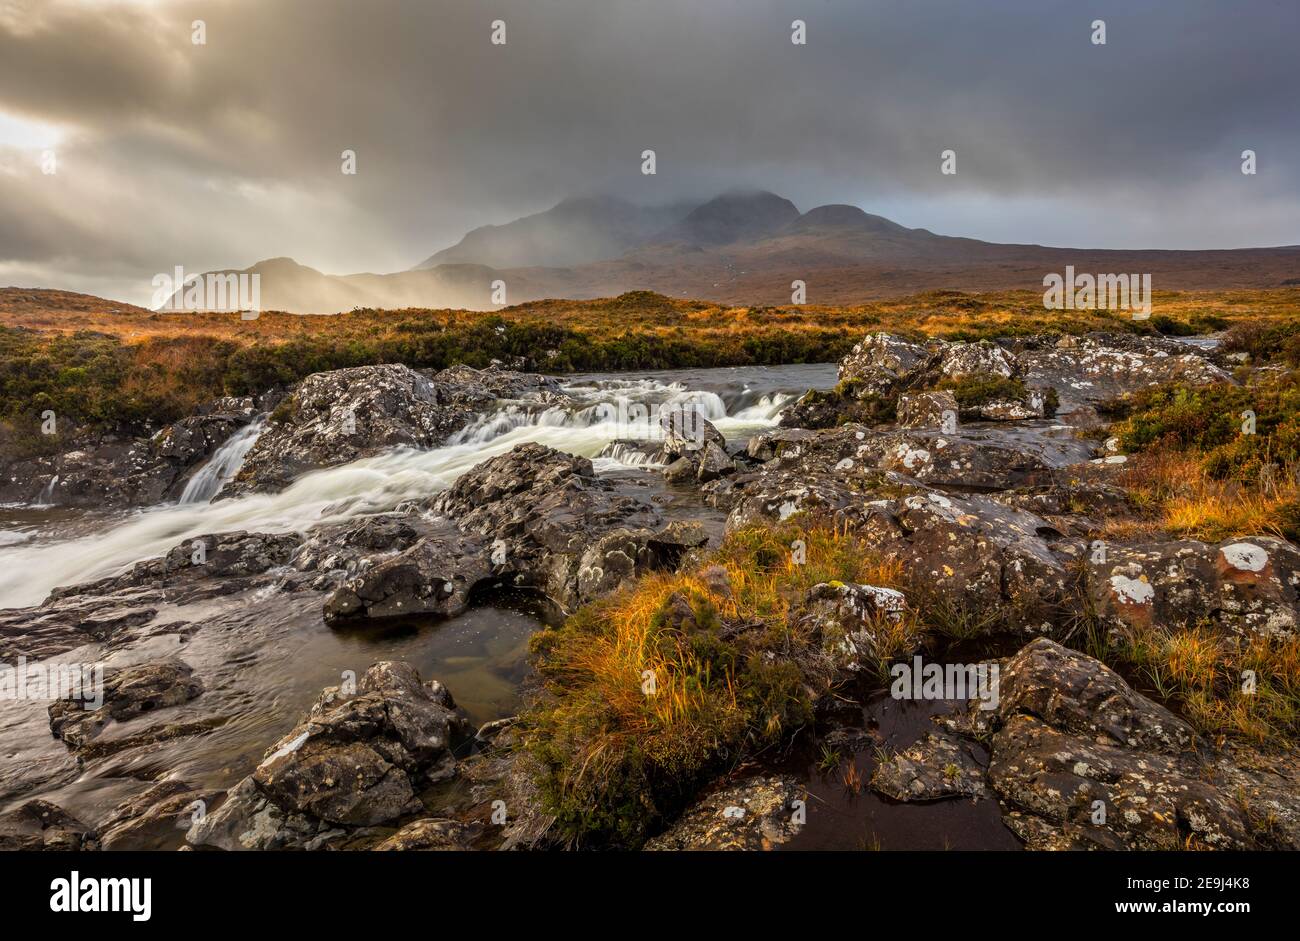 Isola di Skye, Scozia: Acque impetuose del fiume Sligachan e la luce che si infrangono sulle Black Cuillin Mountains in lontananza. Foto Stock